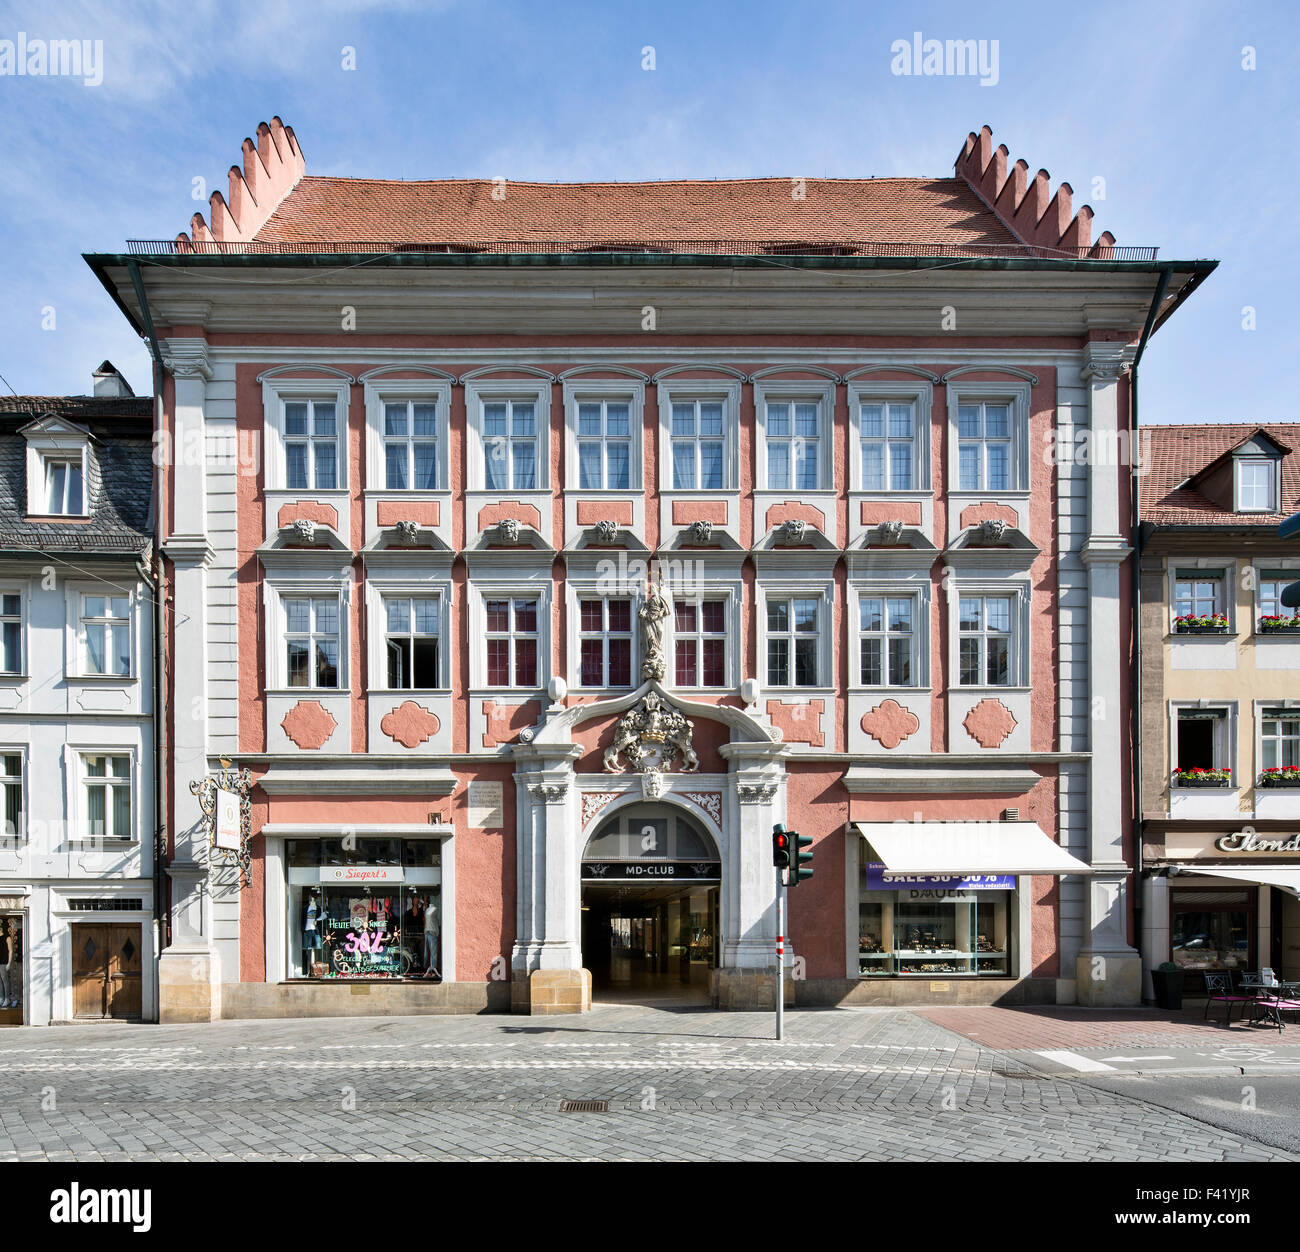 Haus Zum Saal oder Wallenstein-Haus, repräsentatives Gemeindezentrum, Bamberg, Upper Franconia, Bayern, Deutschland Stockfoto